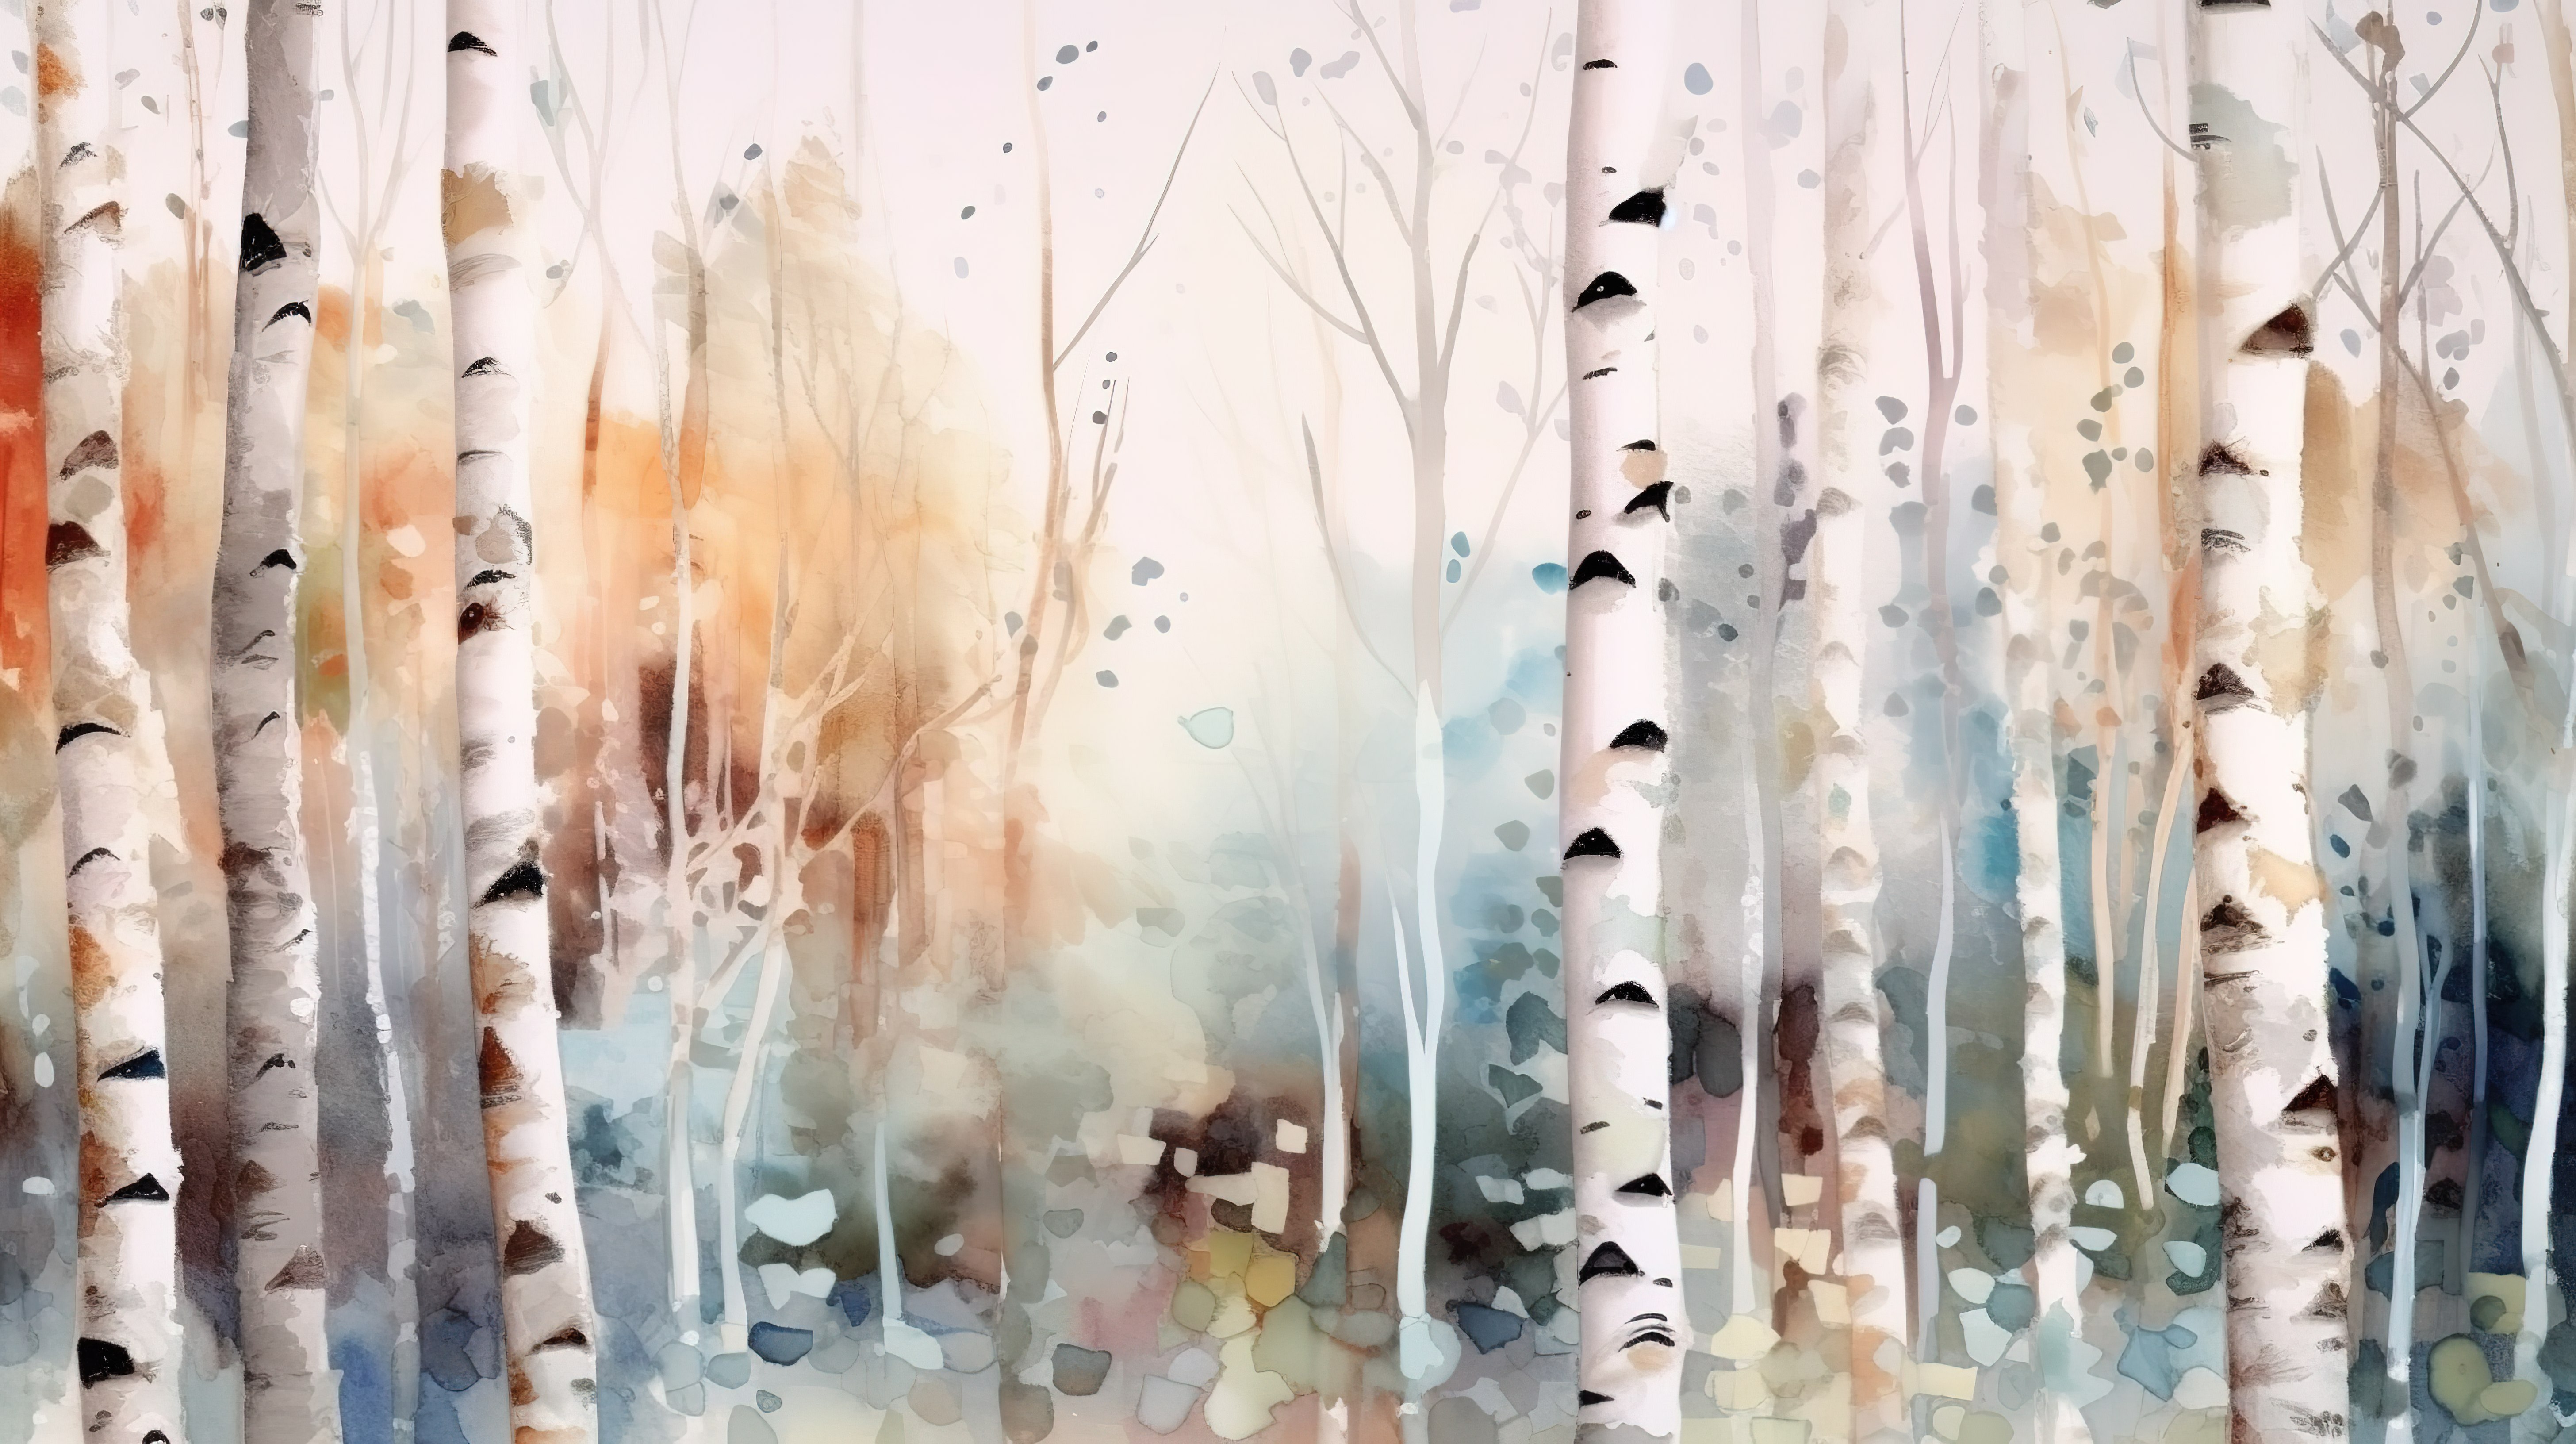 冬季白桦林抽象背景水彩画笔描边和 3D 树干的图形混合图片